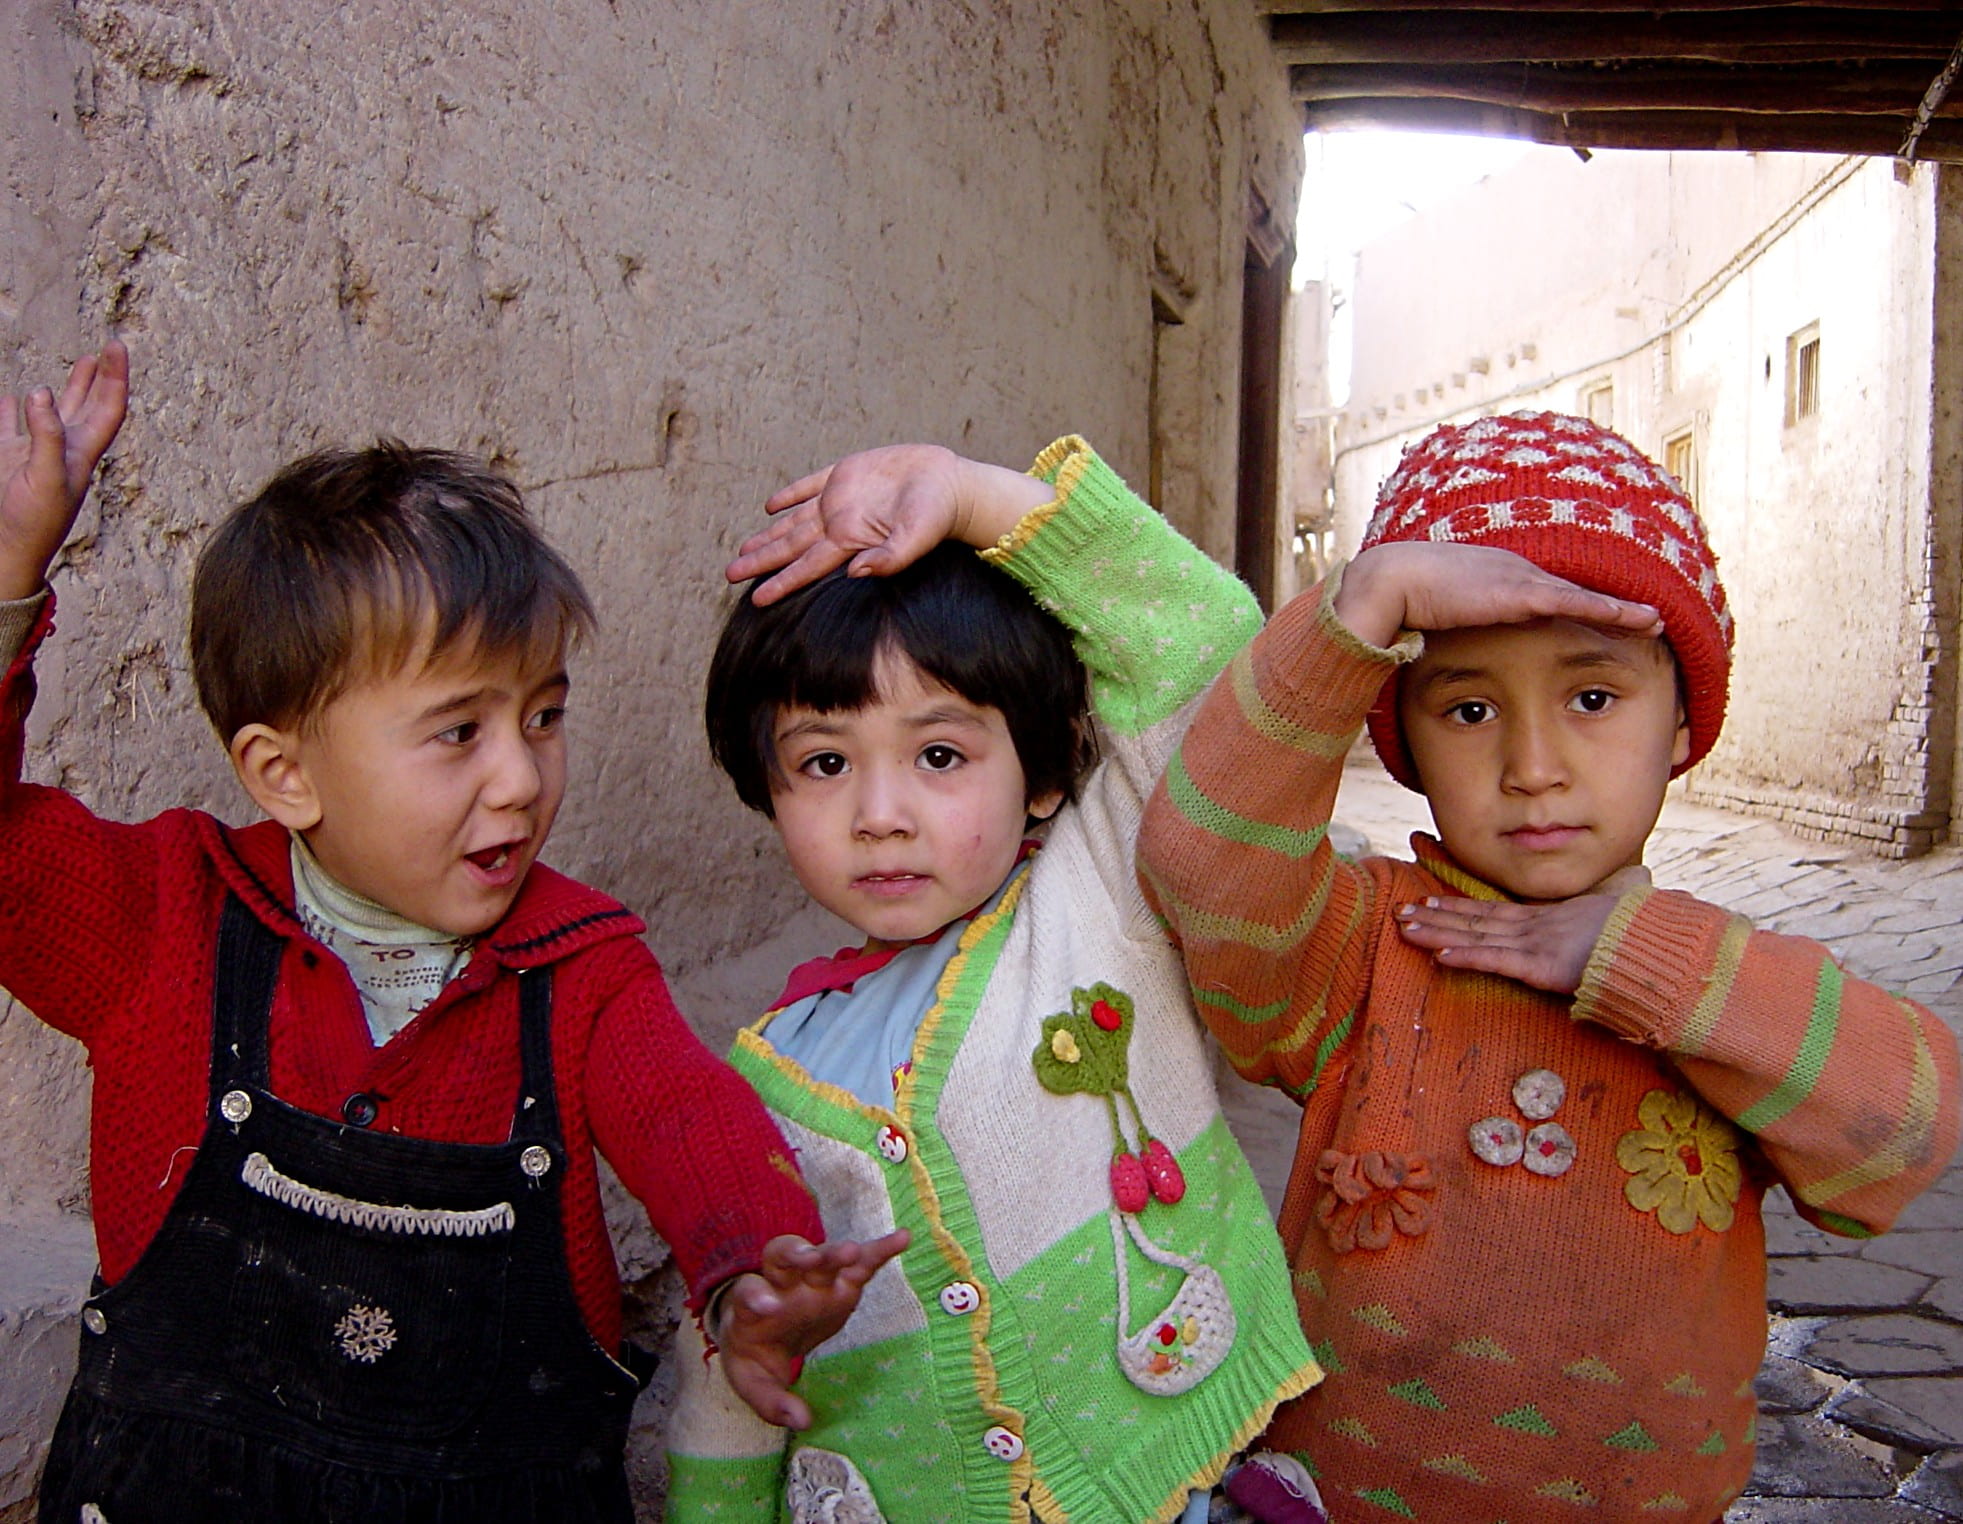 A Humanitarian Crisis in Xinjiang